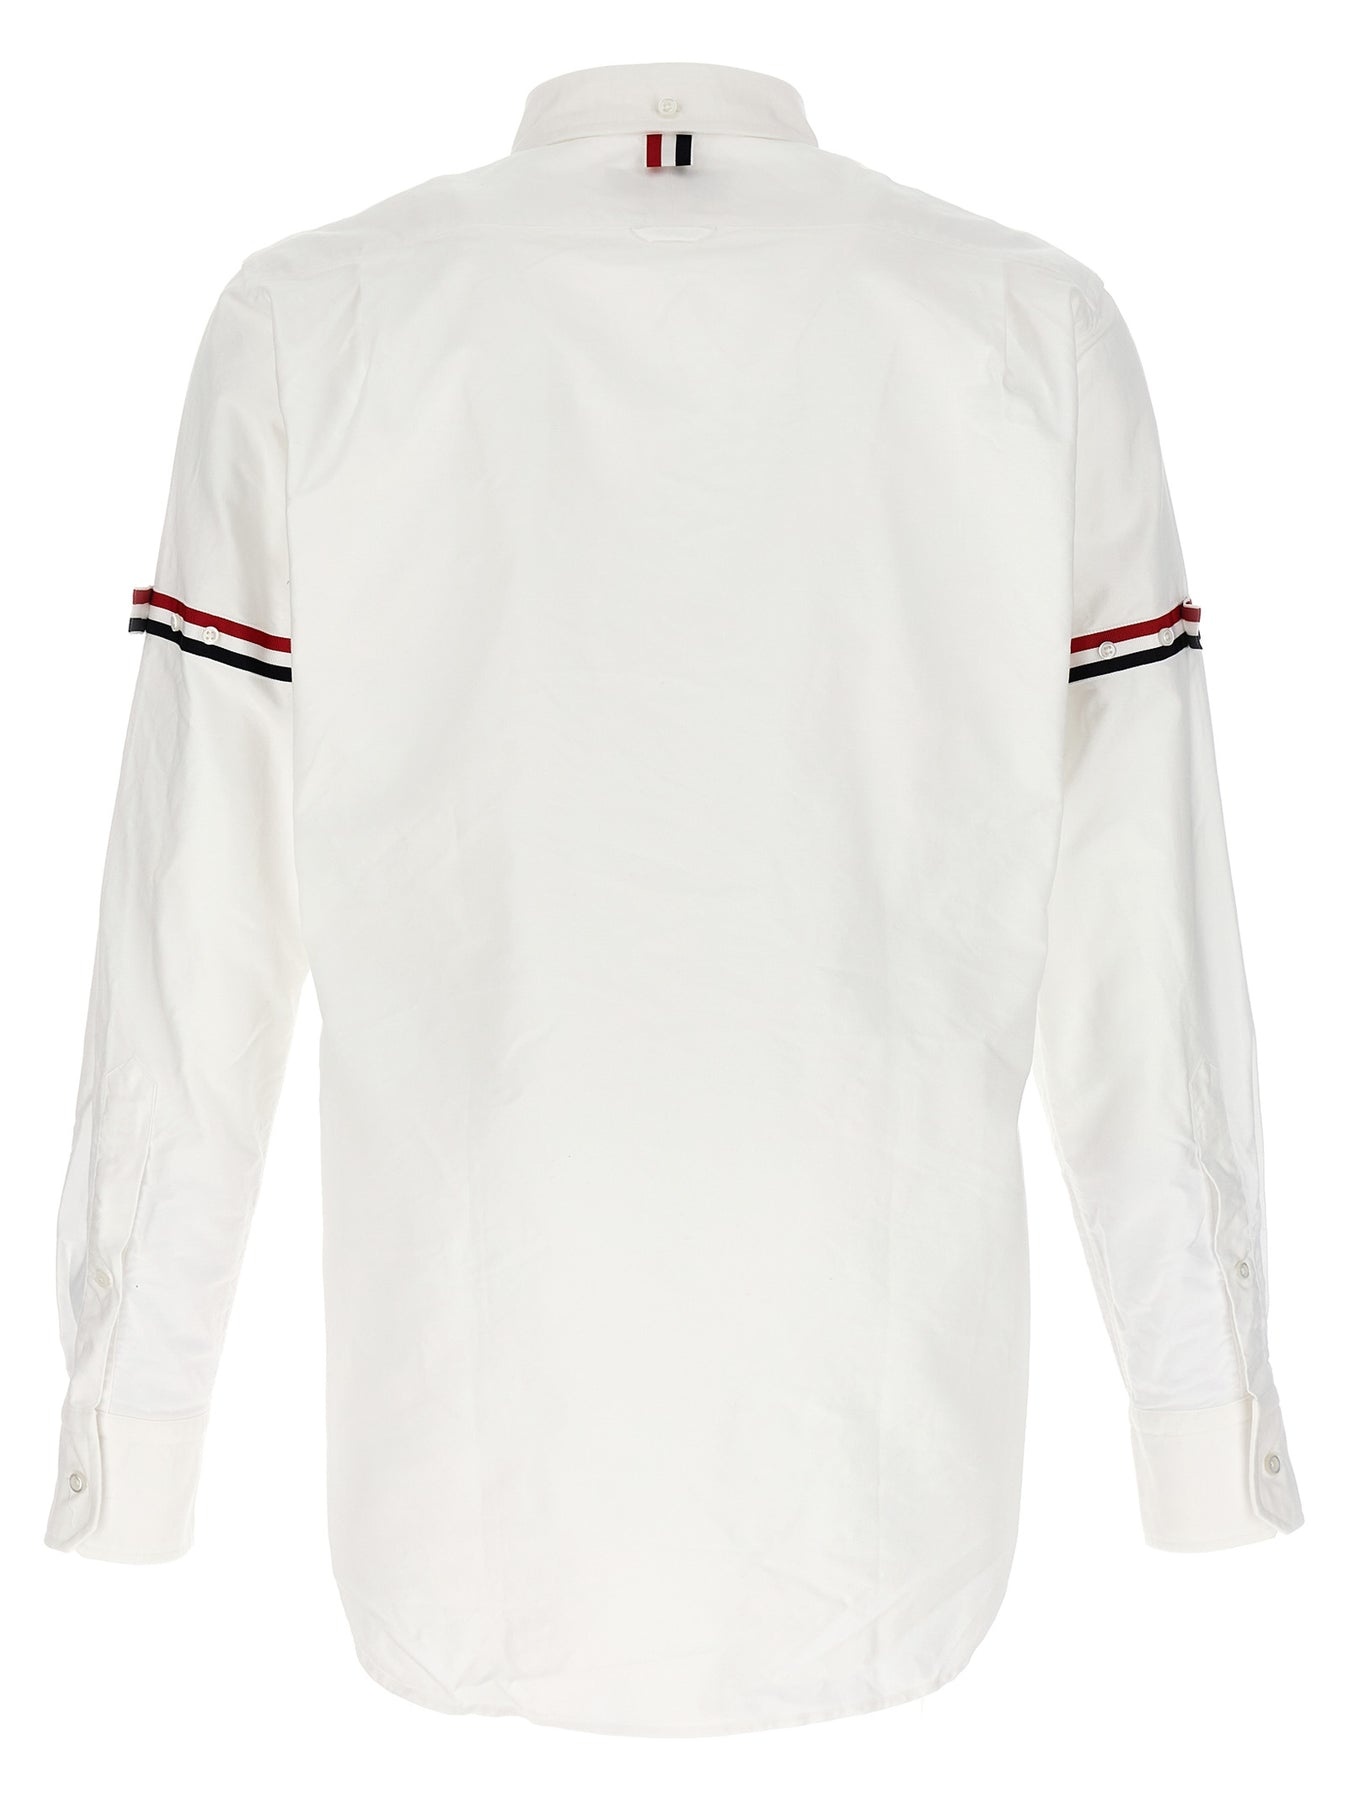 Rwb Shirt Shirt, Blouse White - 2